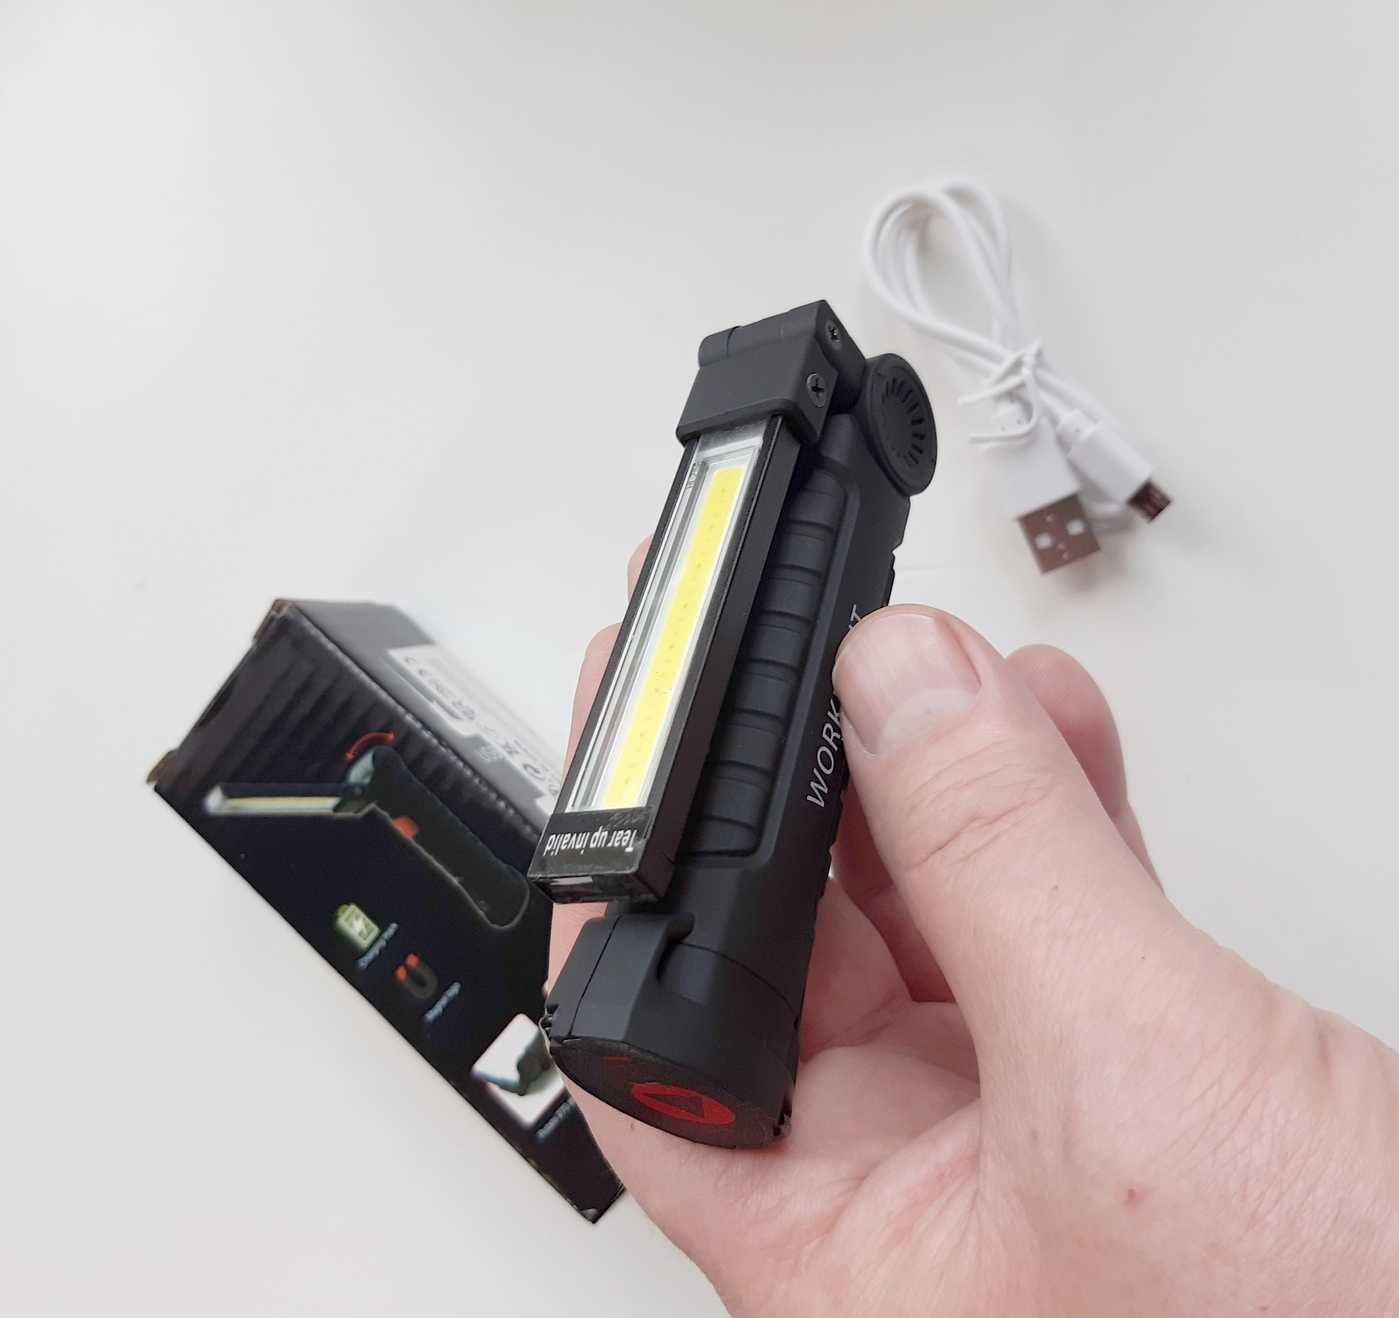 LED latarka akumulator ładowanie USB pięć trybów pracy odporna deszcz